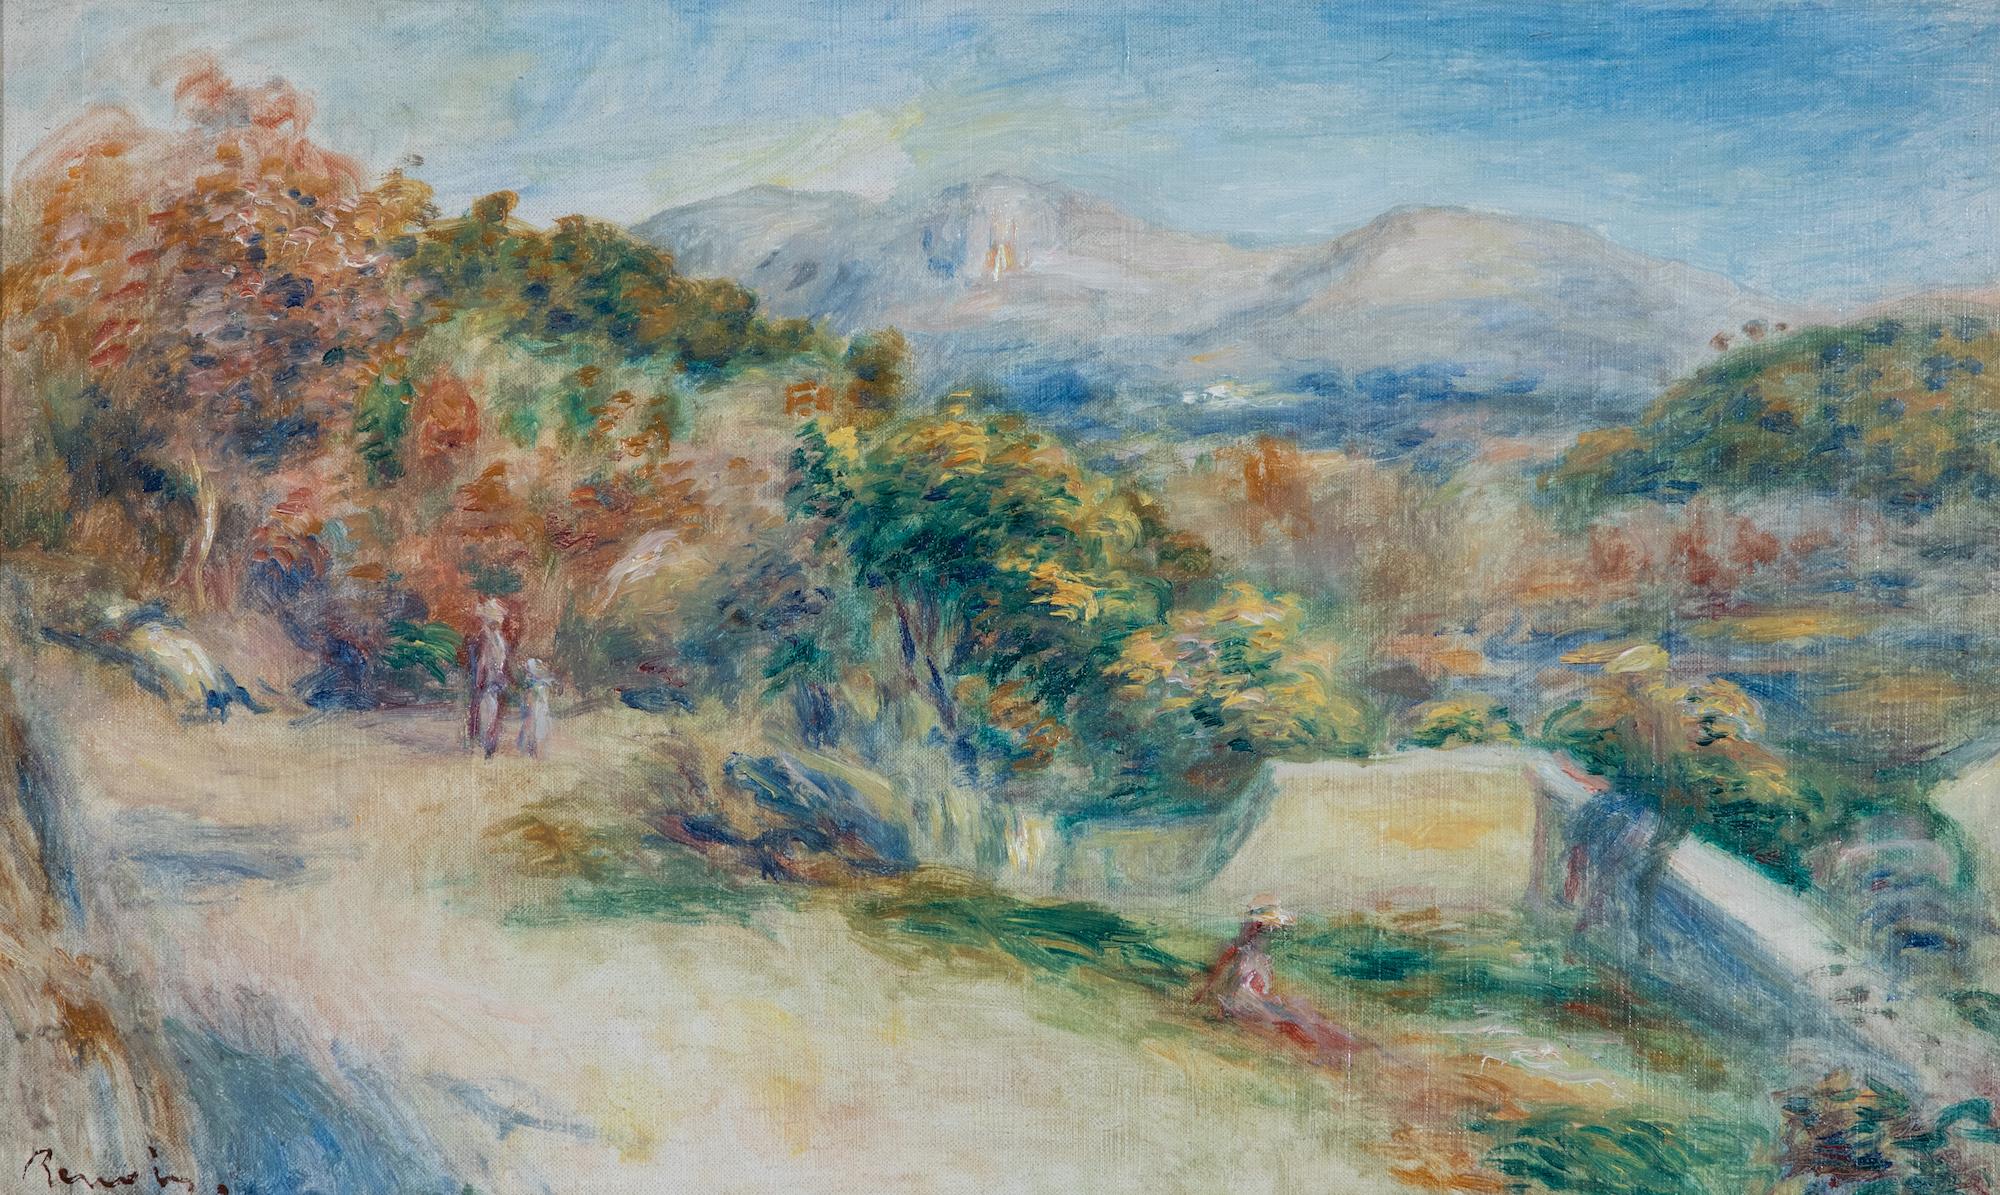 Vue prise des Collettes, Cagnes par Pierre-Auguste Renoir (1841-1919)
Huile sur toile
28 x 45,7 cm (11 x 18 pouces)
Signé en bas à gauche, Renoir
Exécuté vers 1910-1911

Cette œuvre est accompagnée d'une lettre d'authenticité du Wildenstein